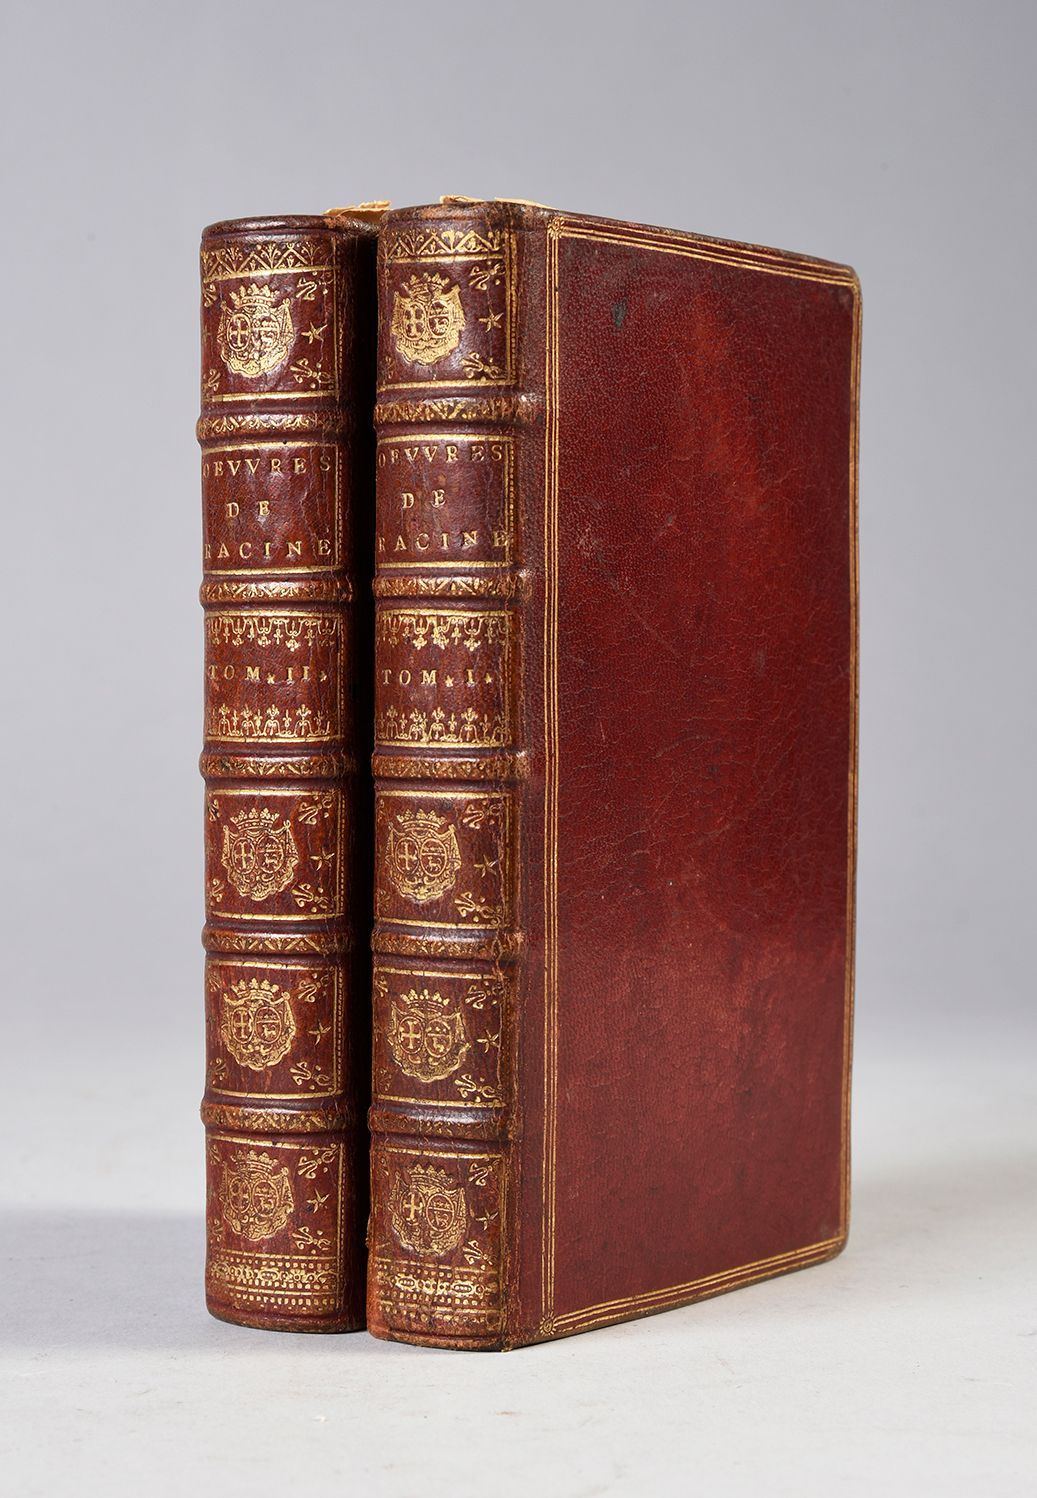 RACINE, Jean Œuvres [...]
P., Denys Thierry 1702.
2 volumi in-12, in pieno maroc&hellip;